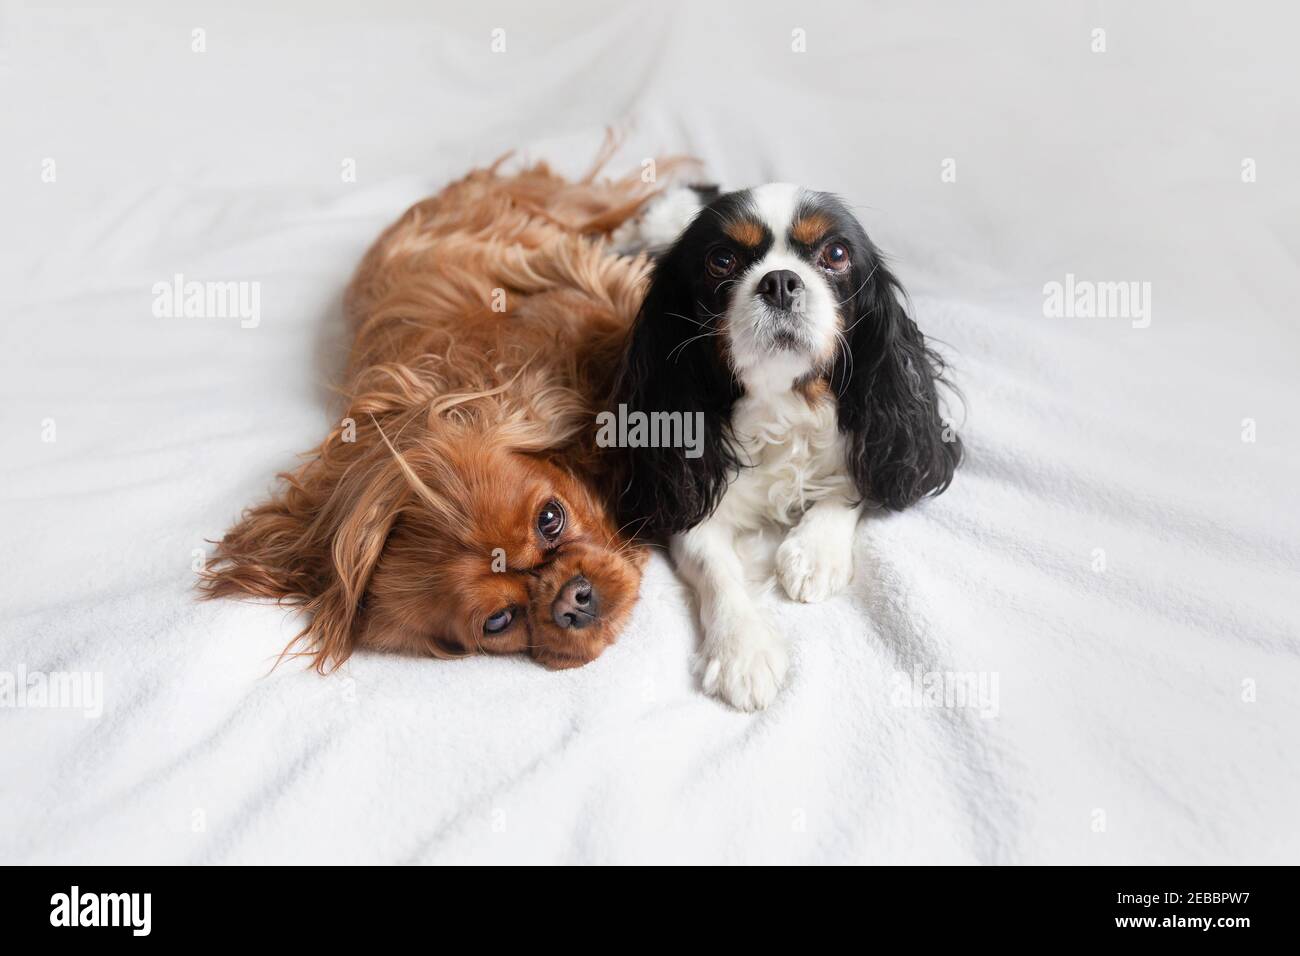 Perros lindos, spaniels caballeroso relajándose juntos en la cama Foto de stock